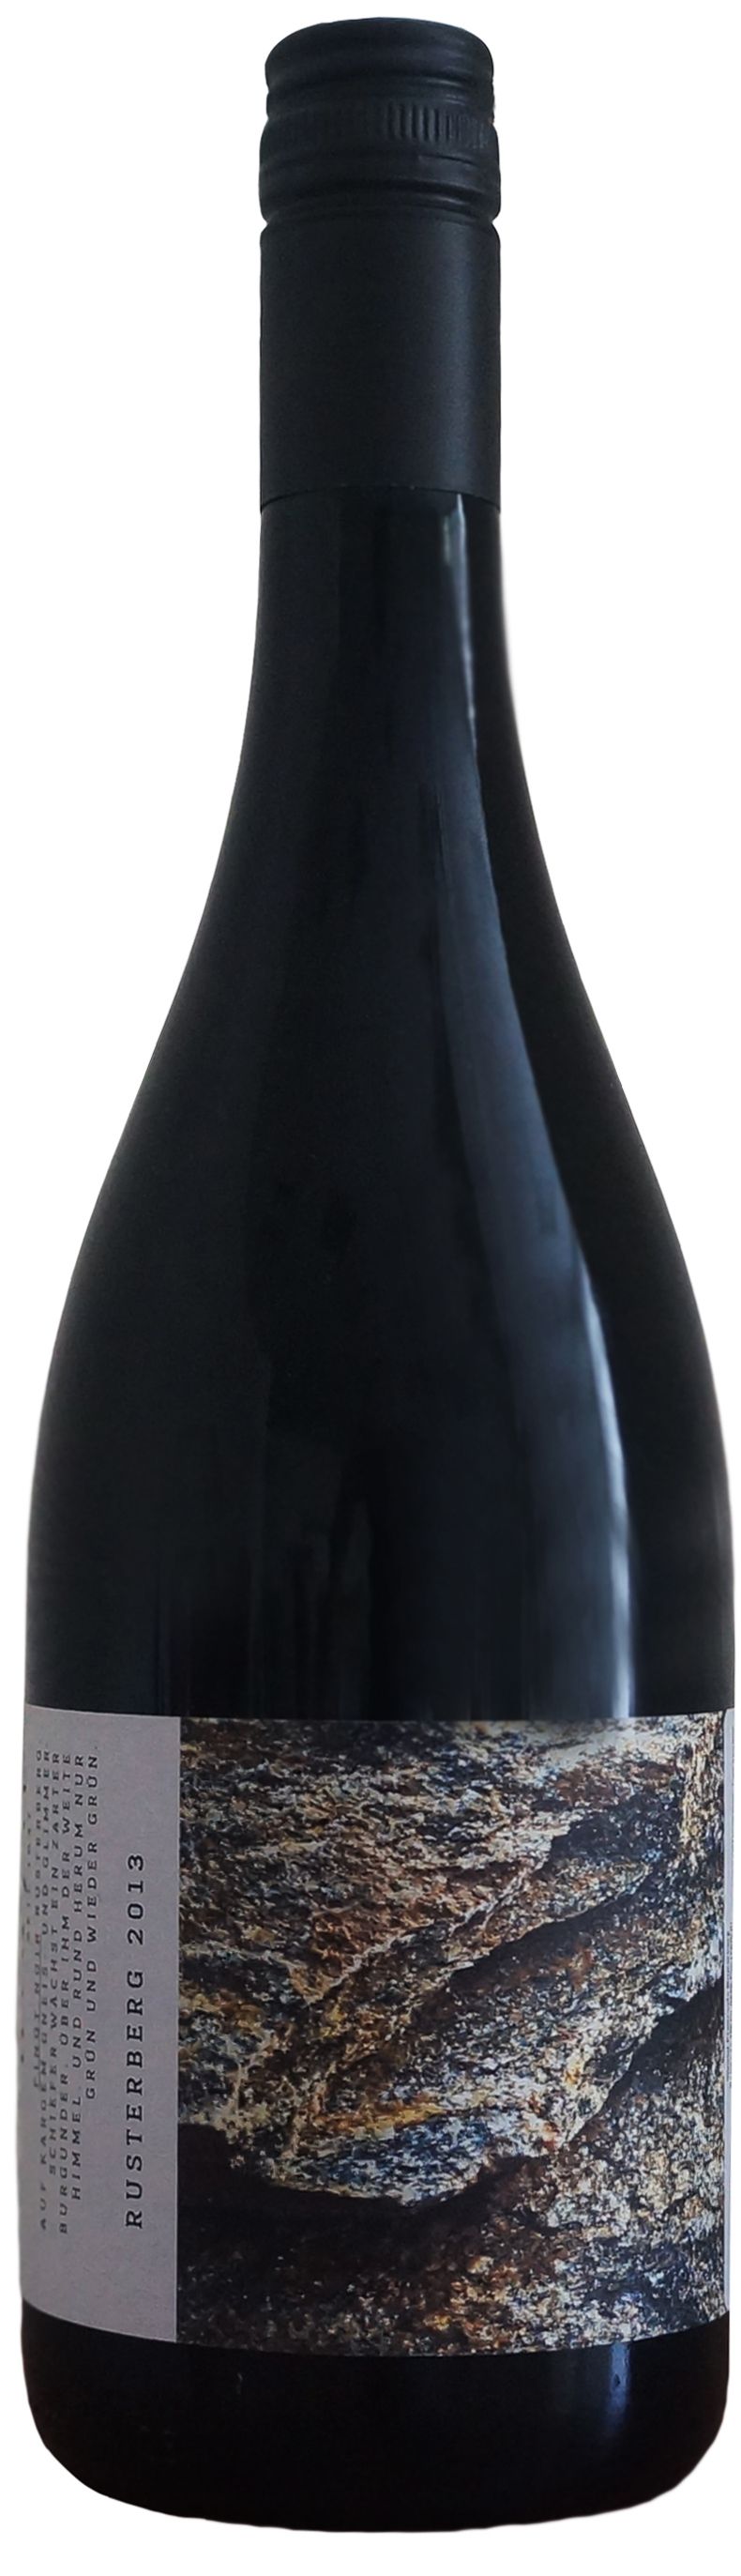 Wenzel, Rusterberg Pinot Noir, 2013